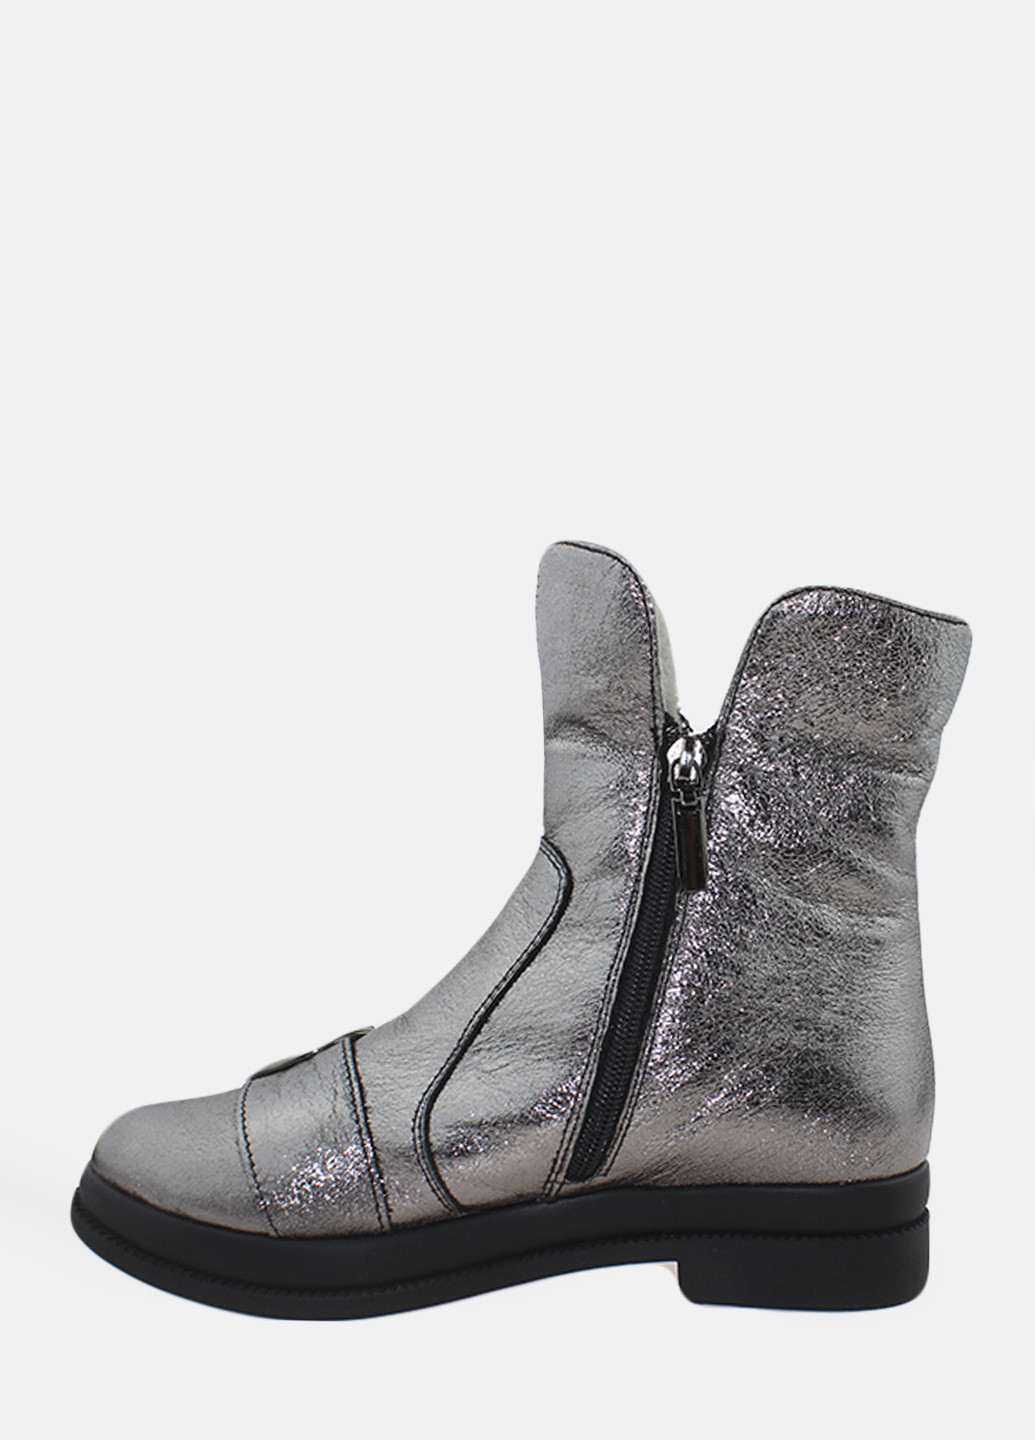 Зимние ботинки rp7725 серебро Passati